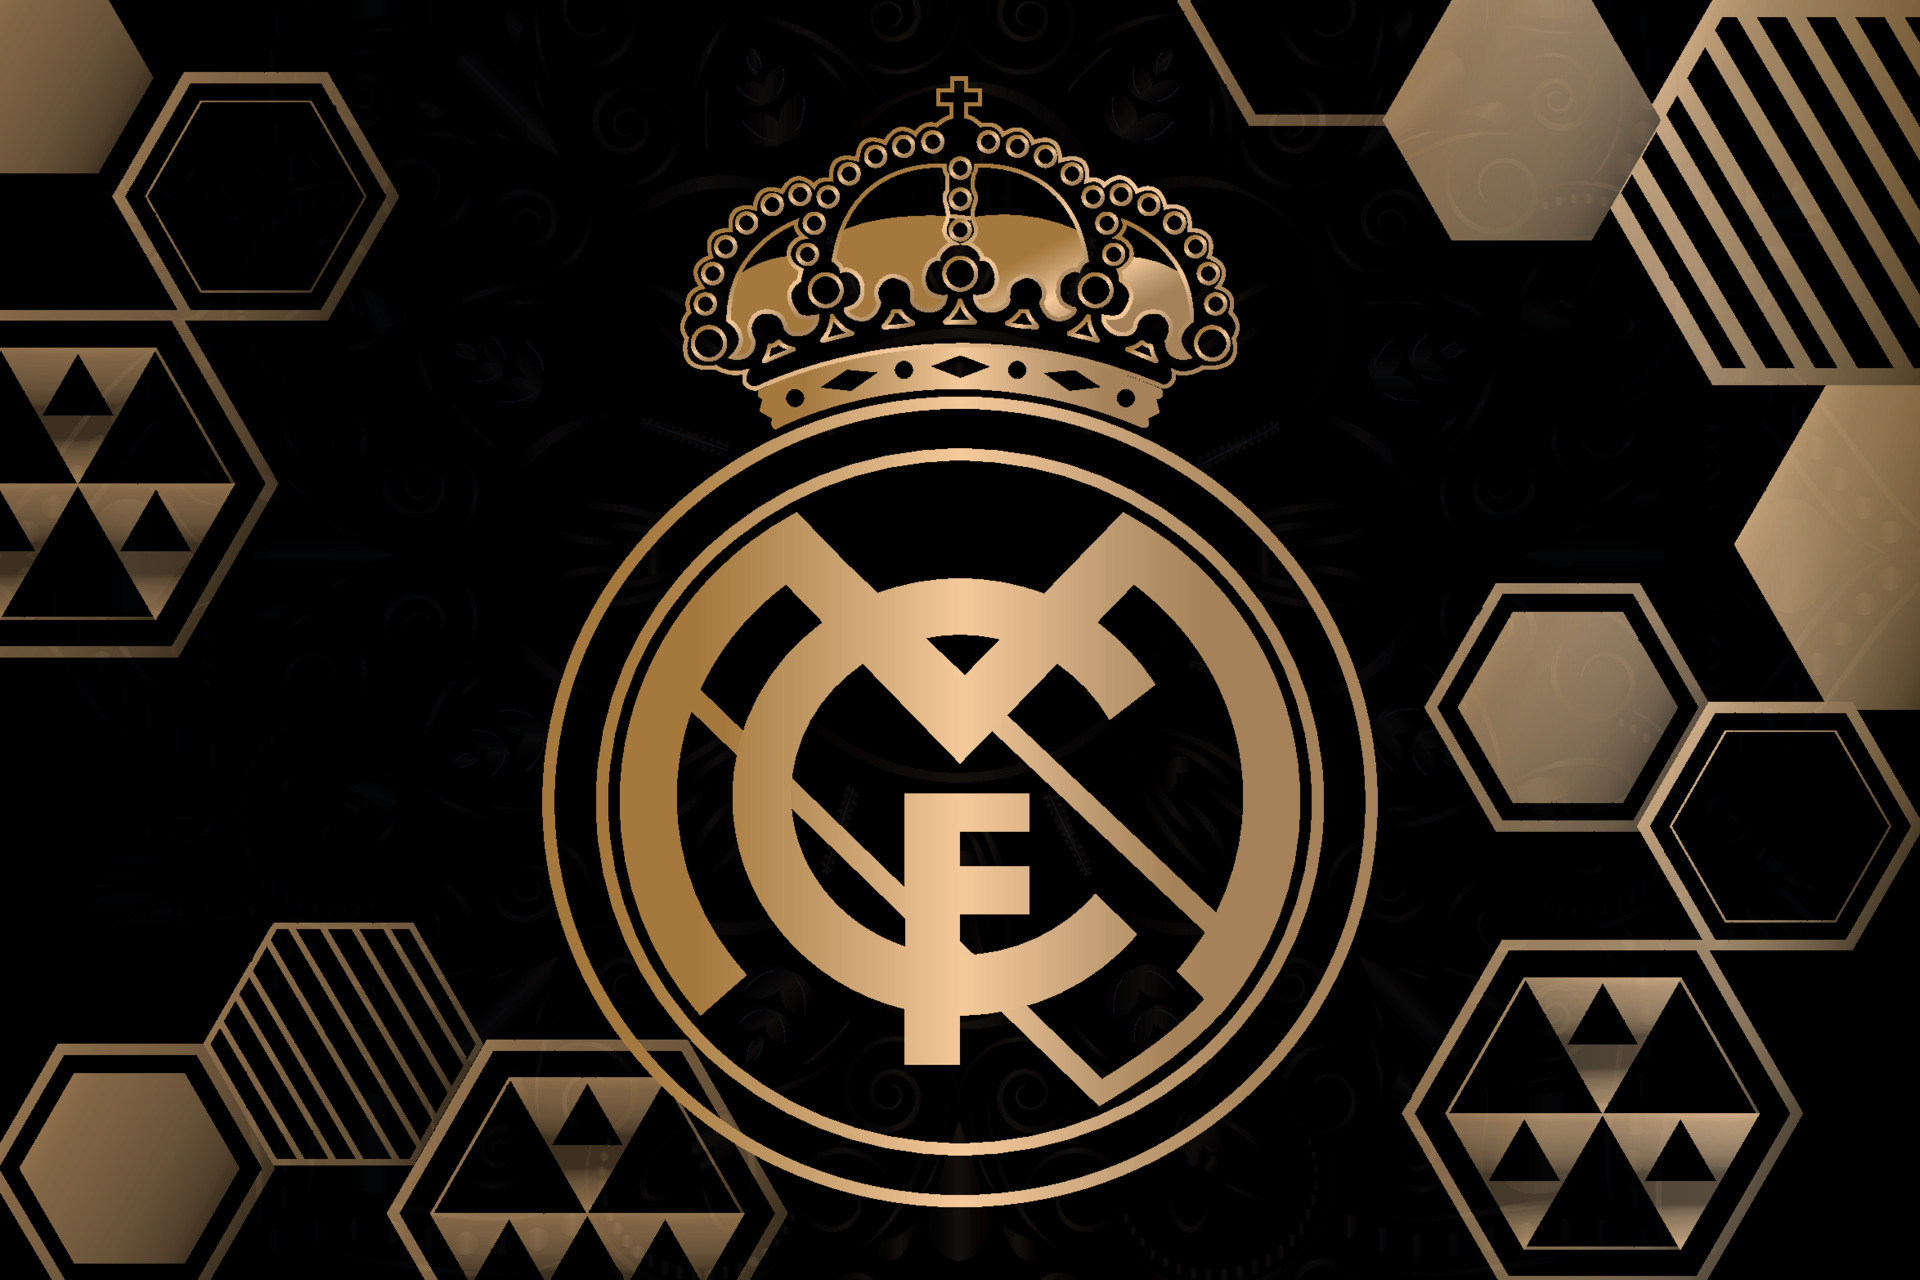 logotipo de madrid, escudo del club de fútbol, emblema en un fondo negro y  dorado 8252911 Vector en Vecteezy